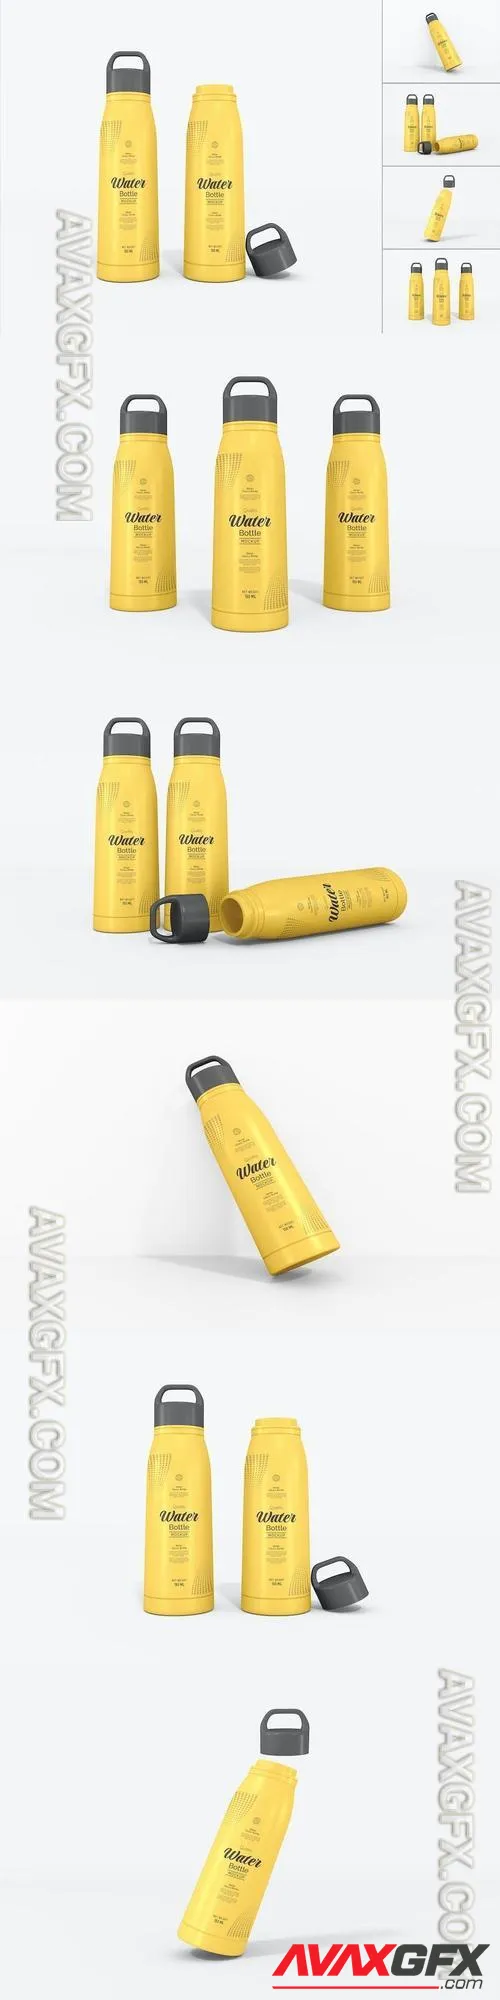 Glossy Plastic Water Bottle Branding Mockup Set